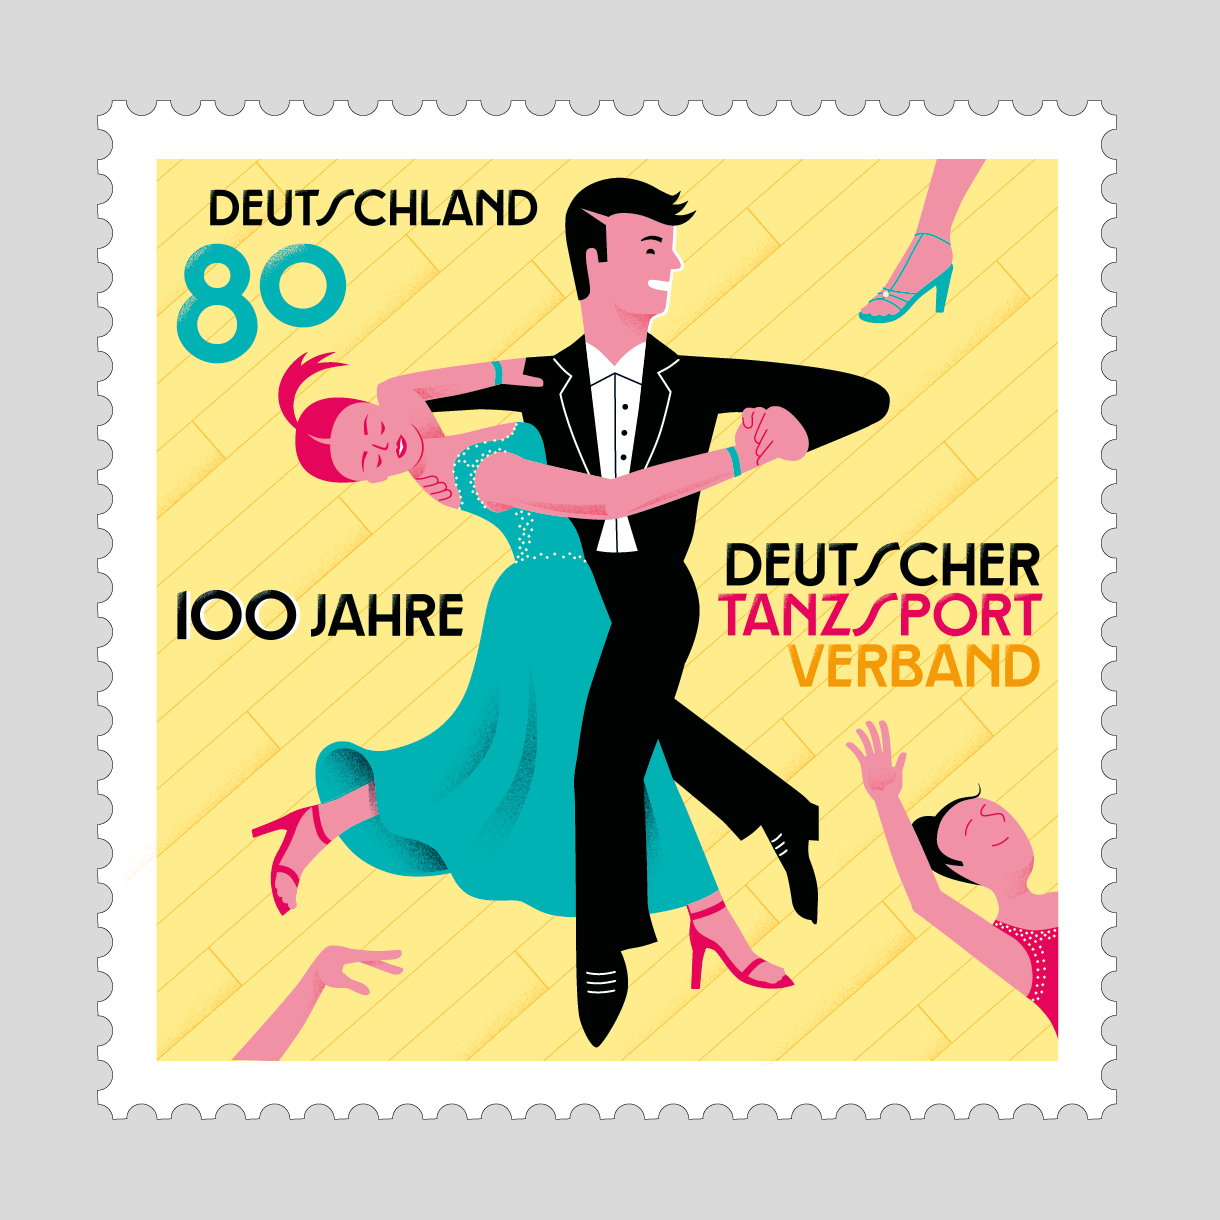 Deutscher_Tanzsportverband